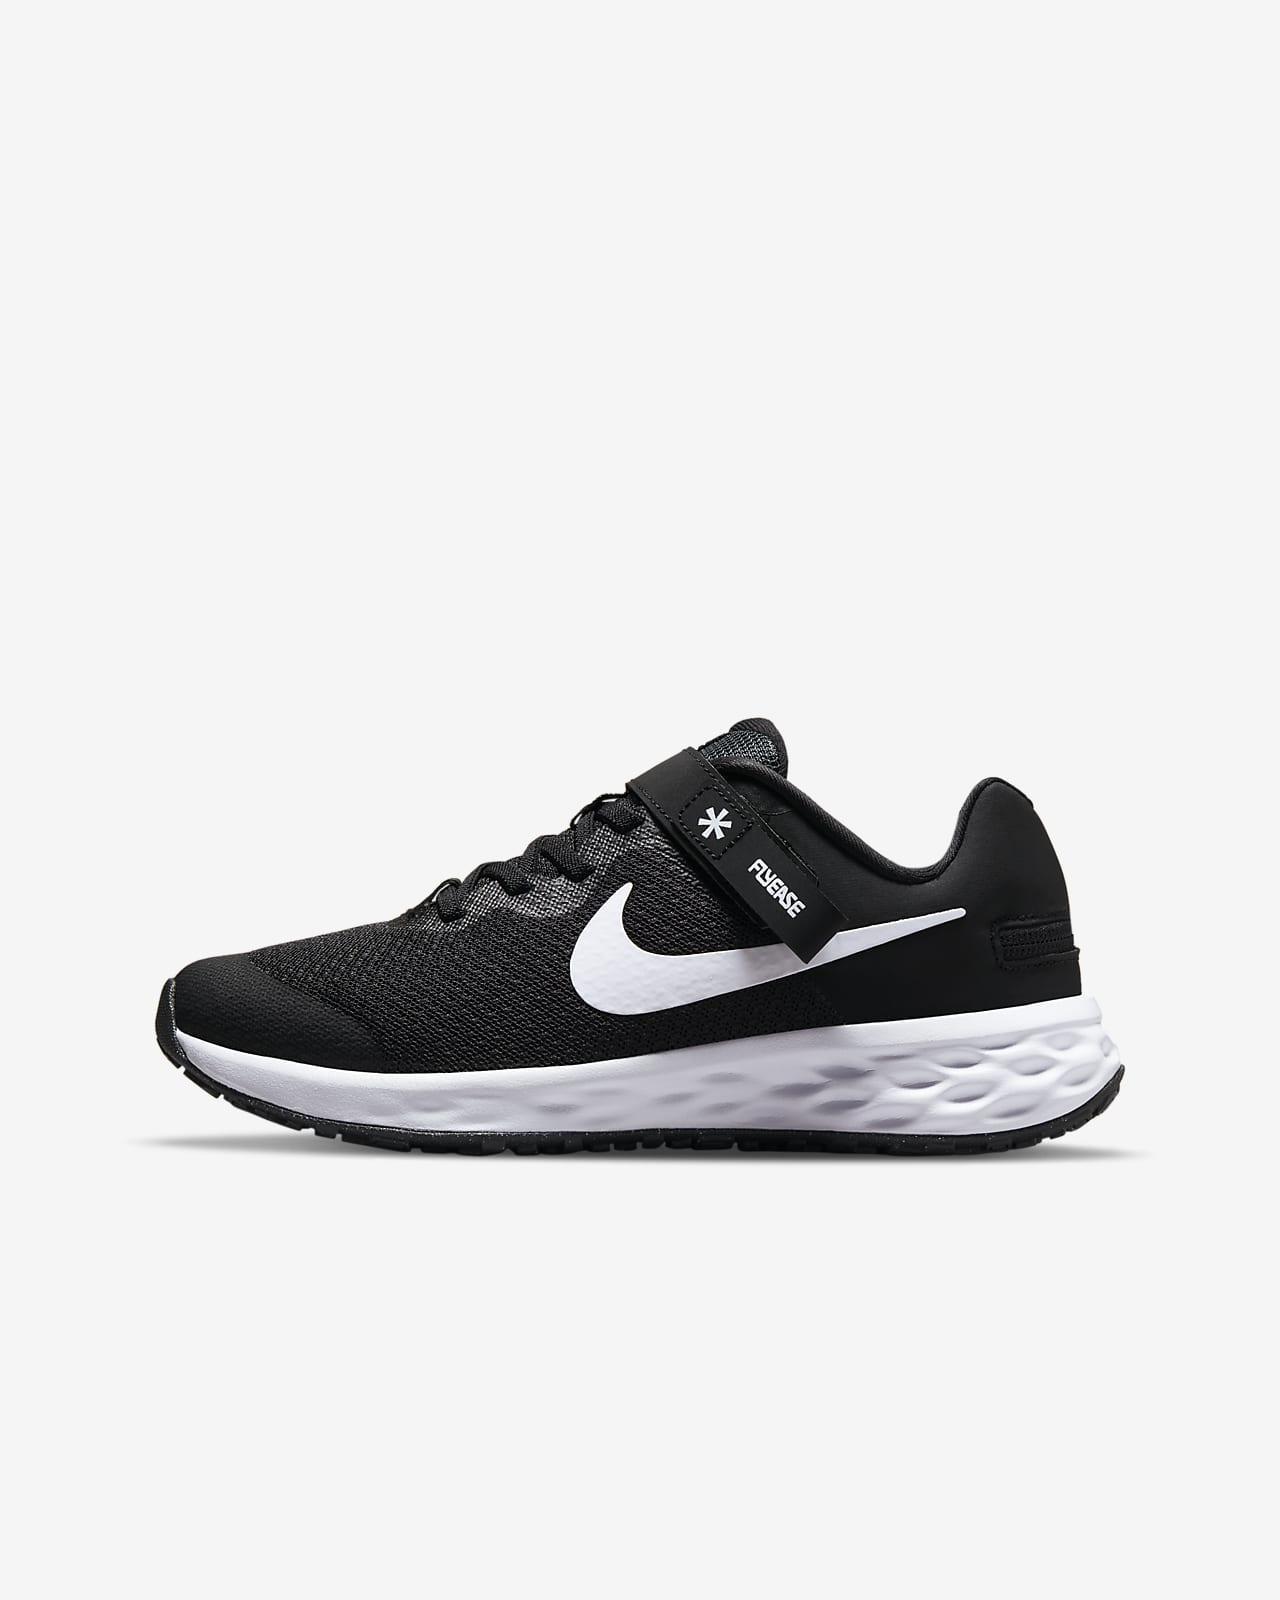 Calzado de running para carretera para mujer fácil de poner y quitar Nike Revolution 6 FlyEase